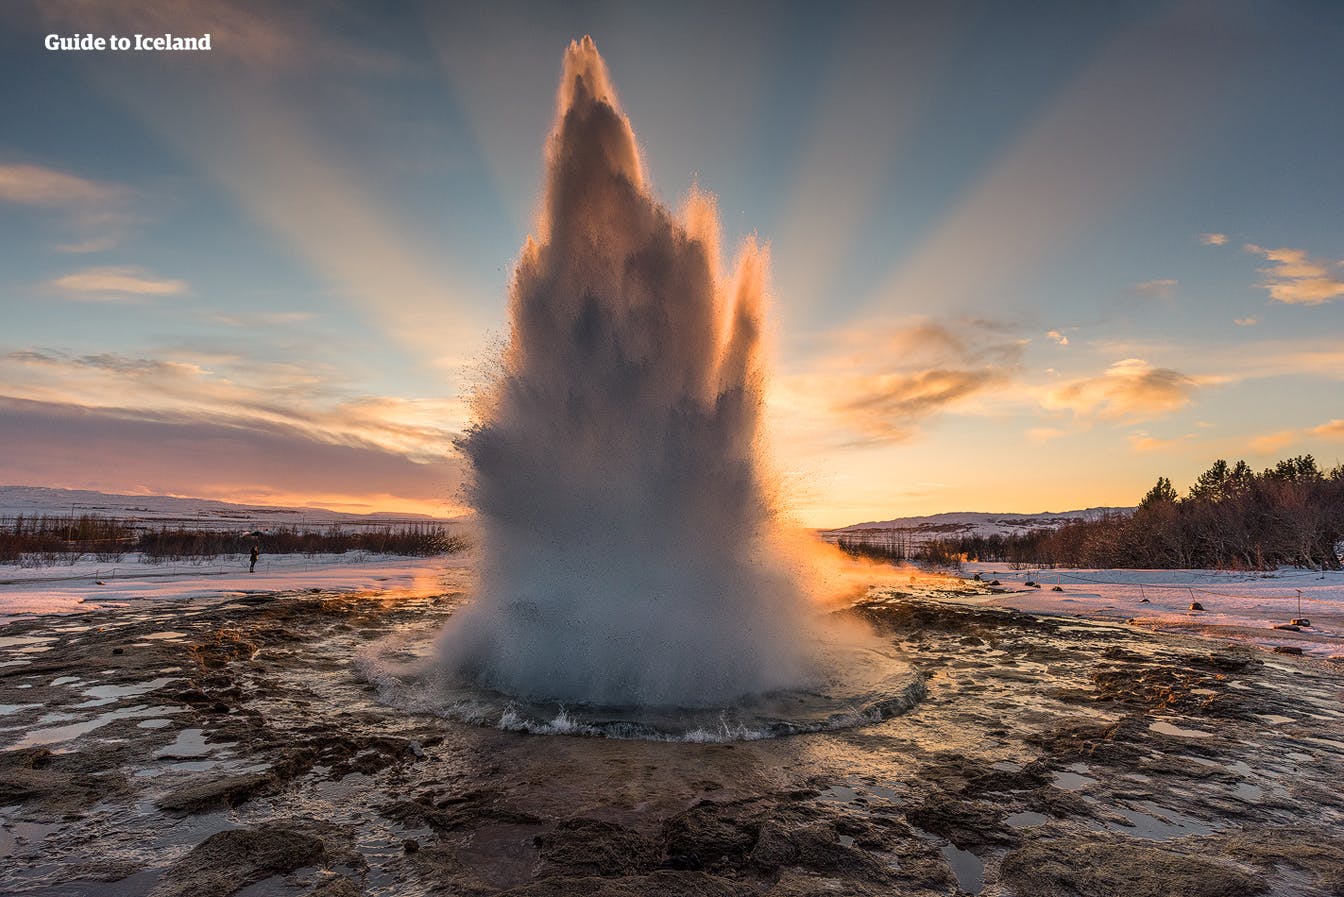 Le geyser le plus actif de la zone géothermique de Geysir en Islande est Strokkur.